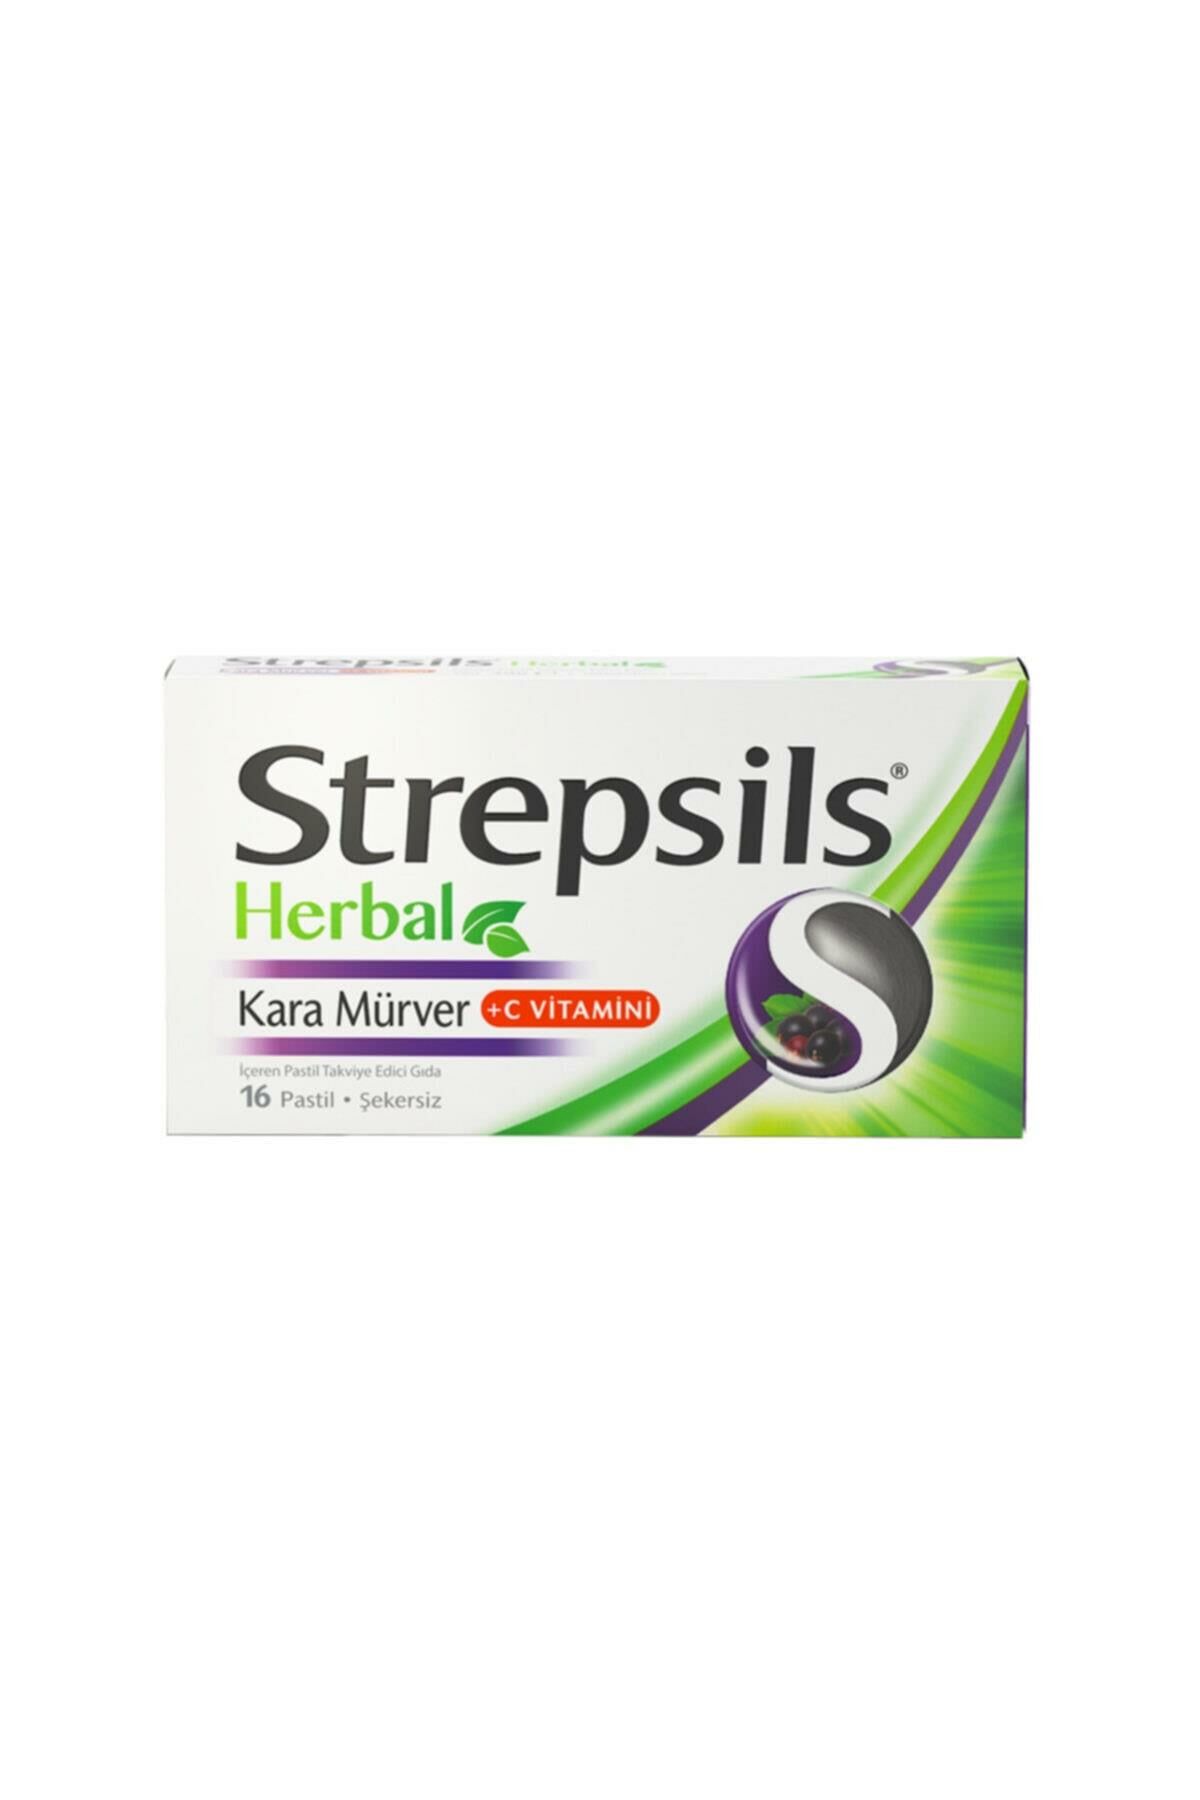 Strepsils Herbal Kara Mürver +C Vitamini 16 Pastil